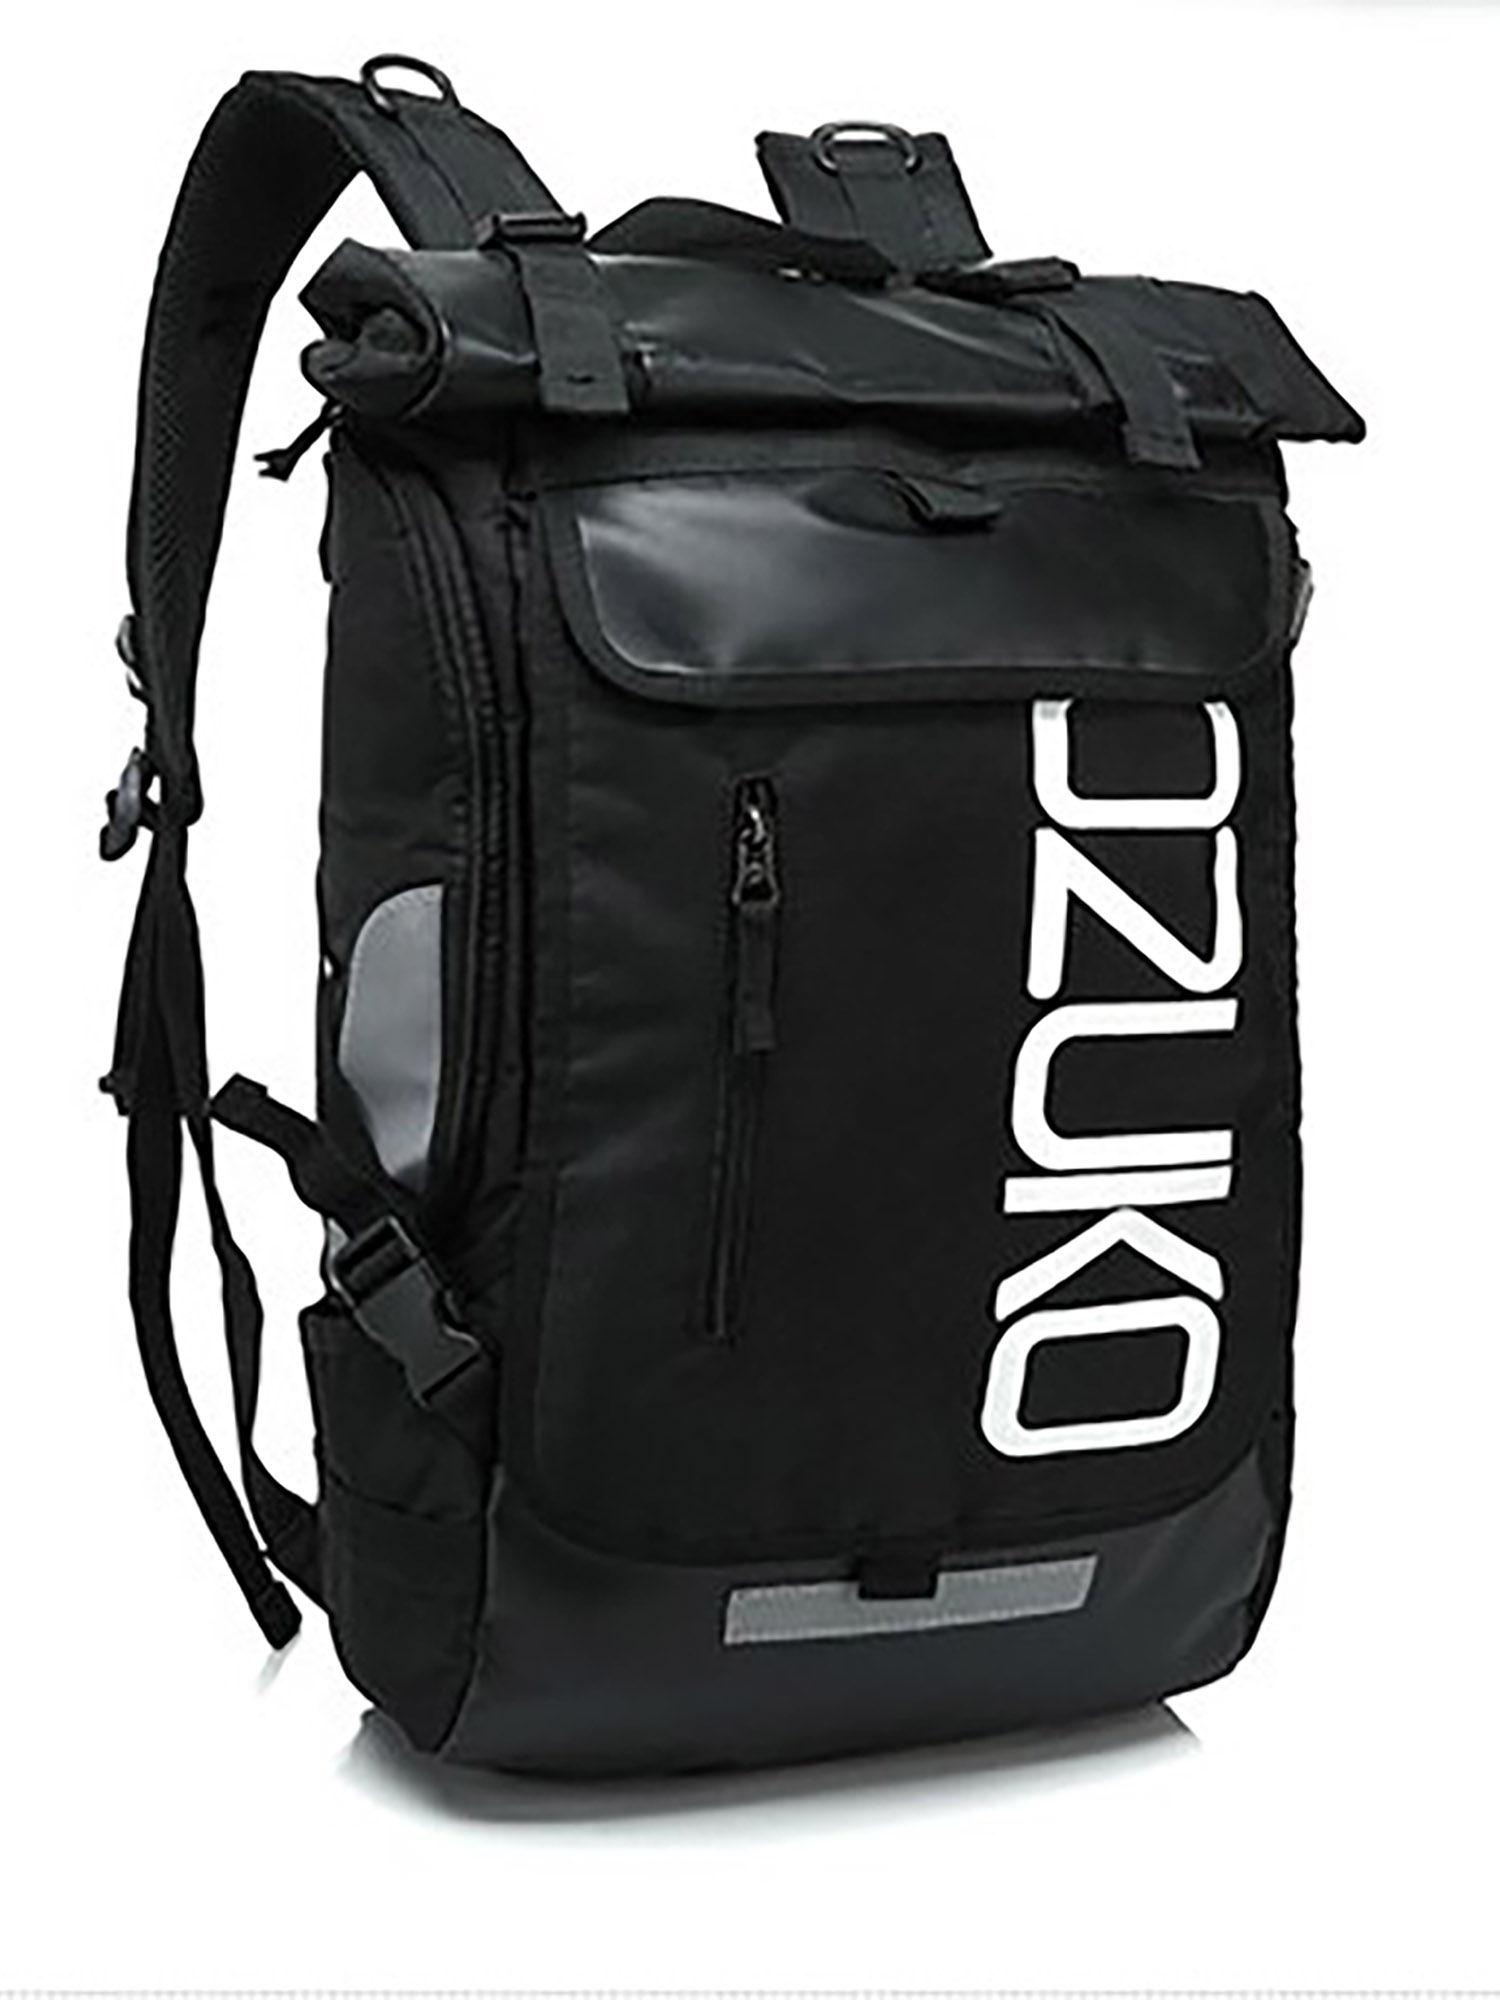 8020-range-black-color-soft-case-backpack